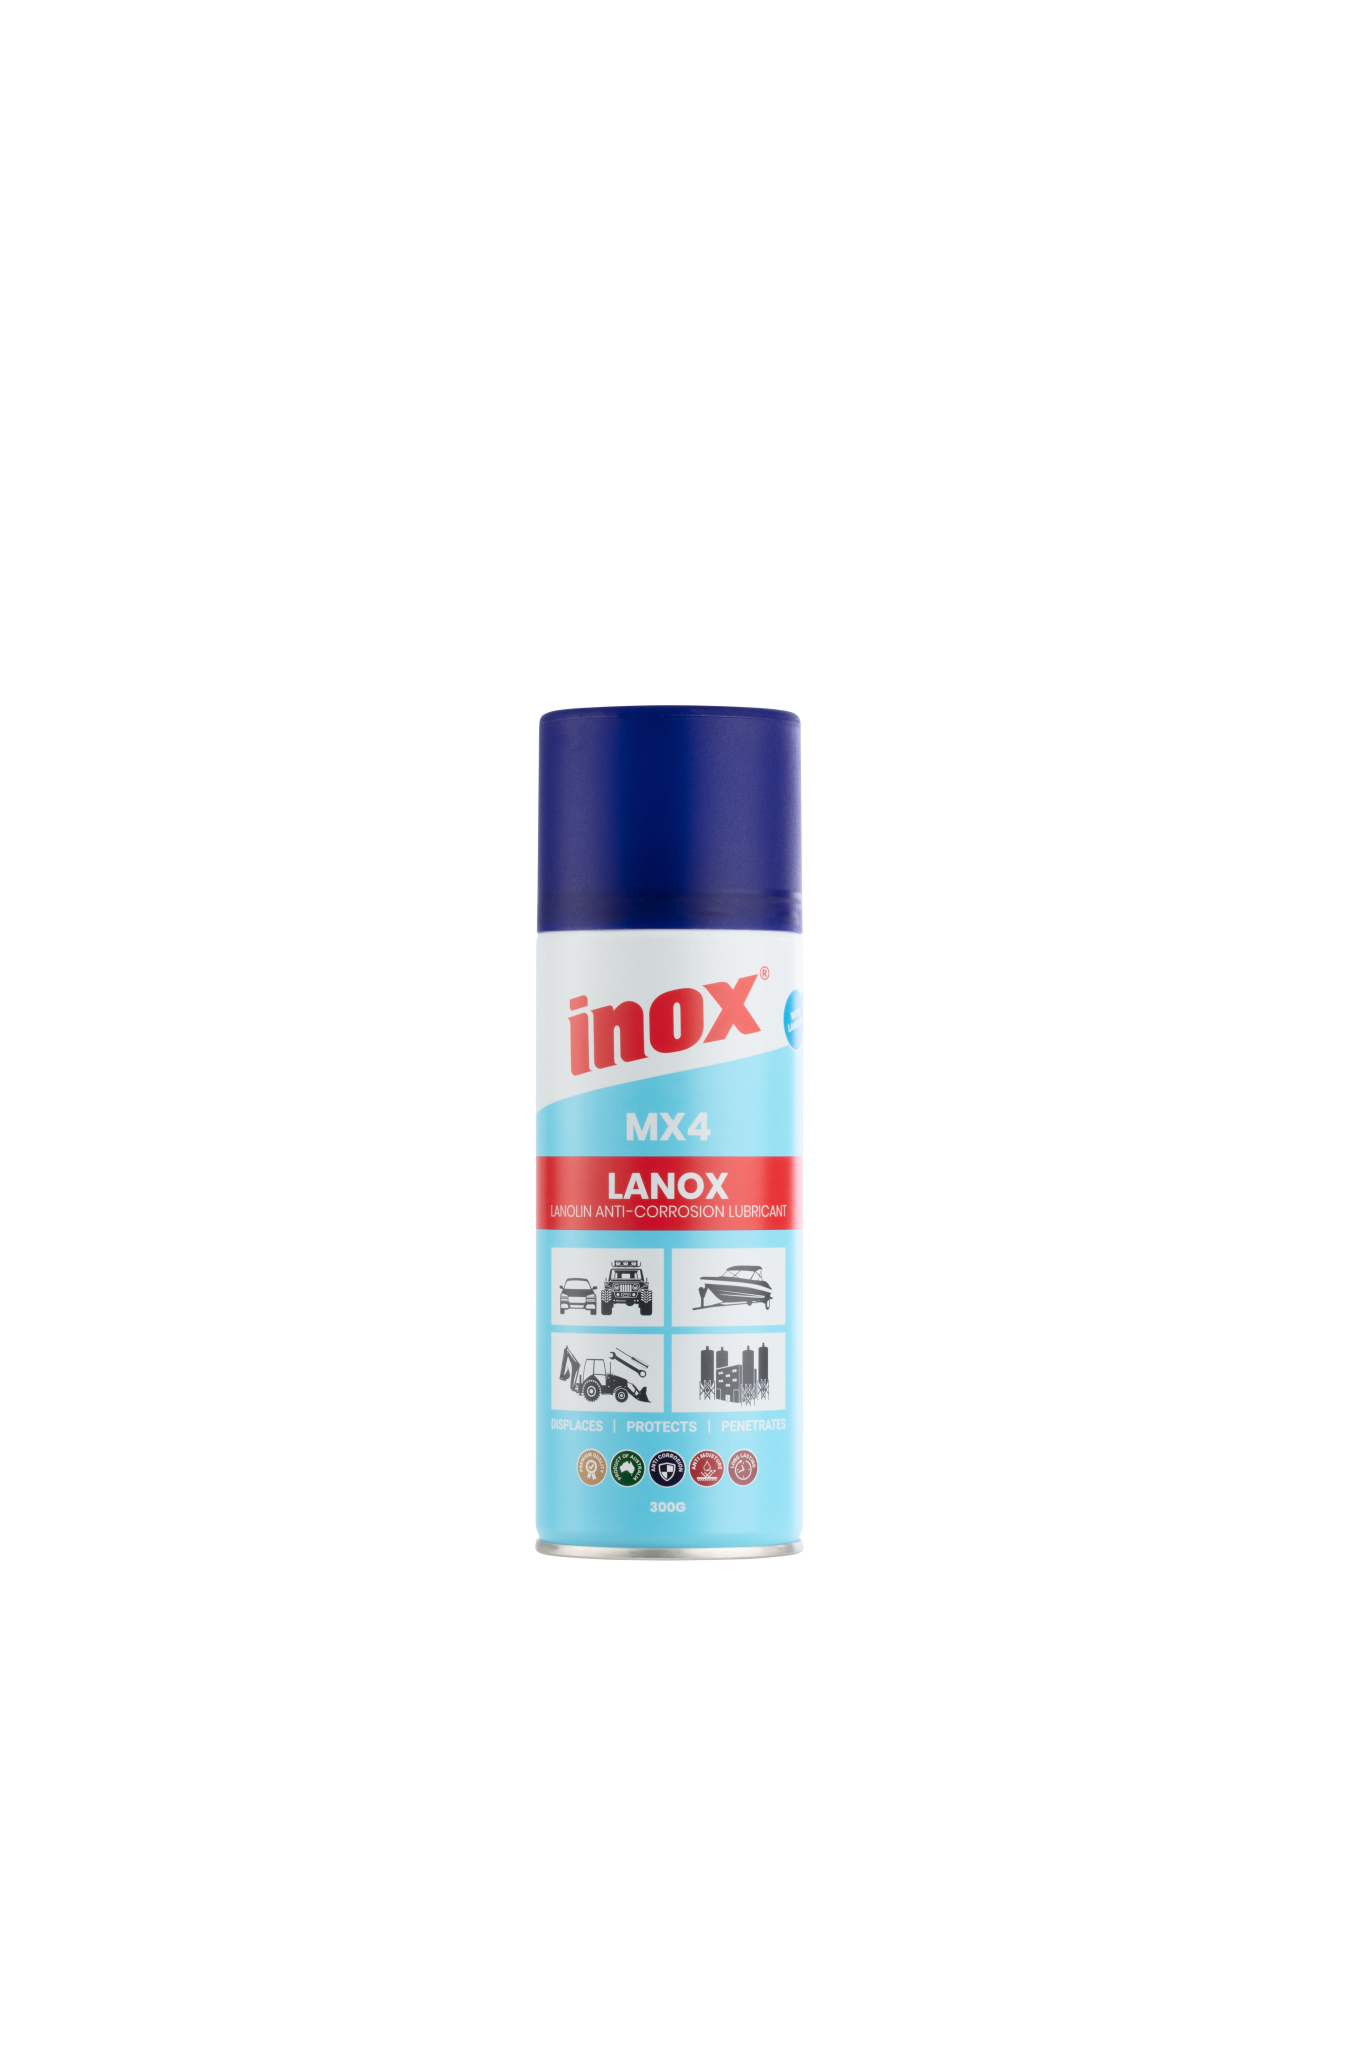 Inox MX4 Lanox 300g